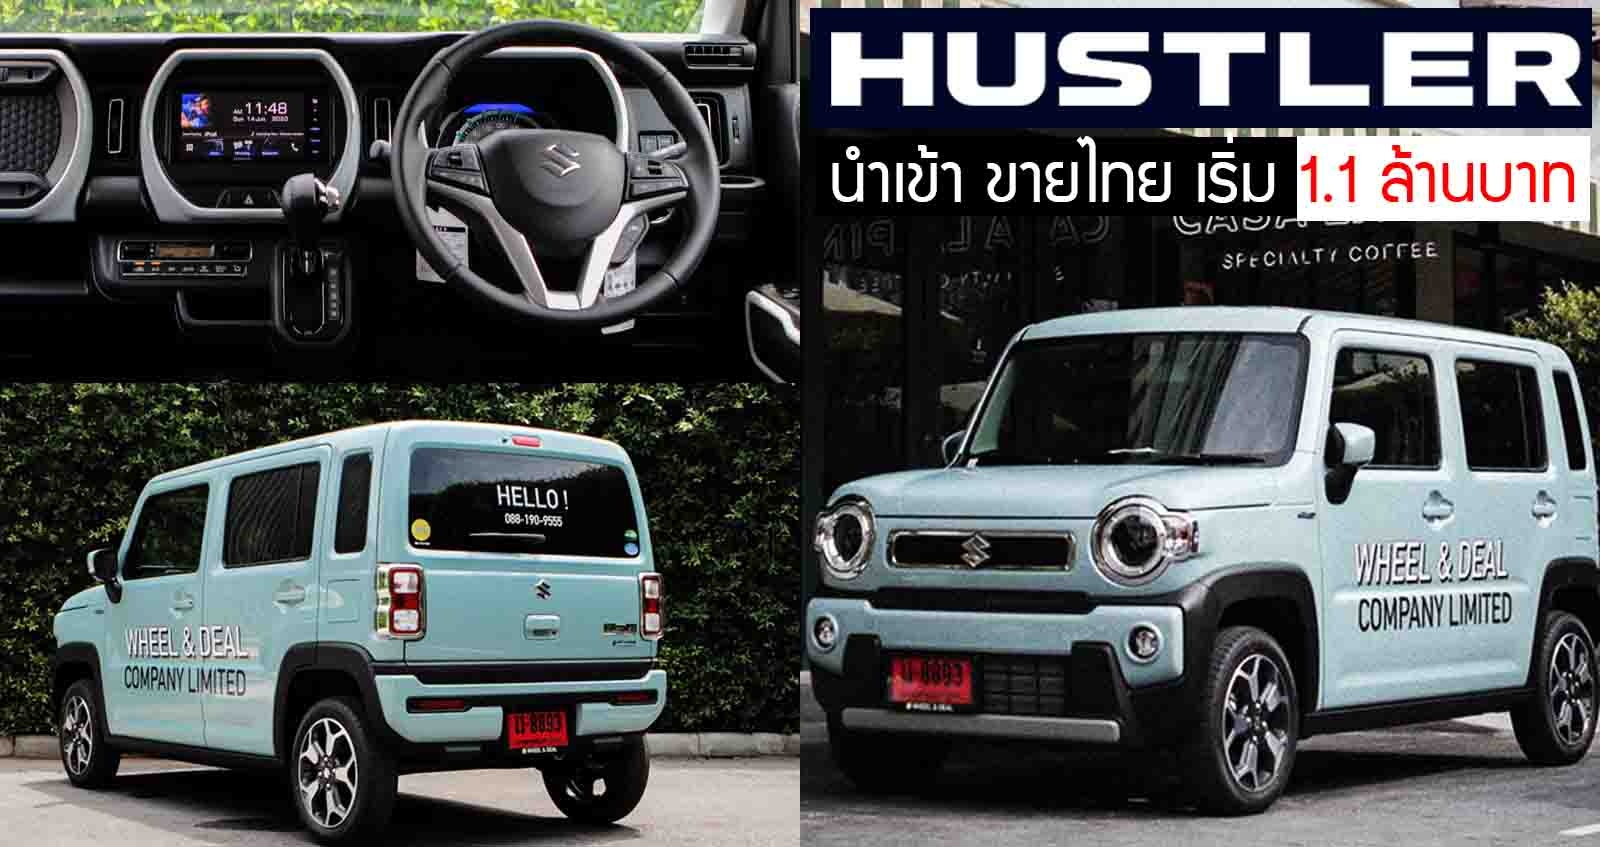 นำเข้าขายไทย Suzuki Hustler ราคา 1.1 ล้านบาท 660cc. Hybrid เทอร์โบ